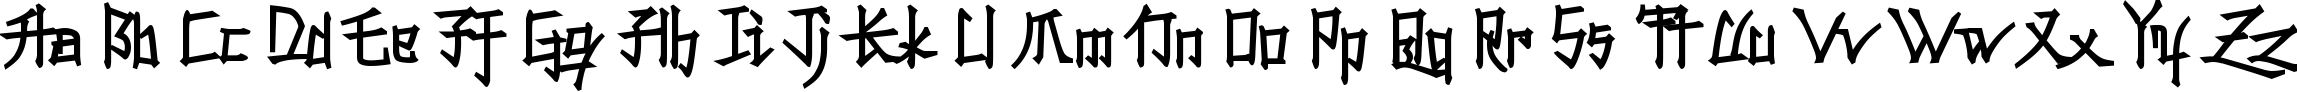 Пример написания английского алфавита шрифтом Konfuciuz Fat